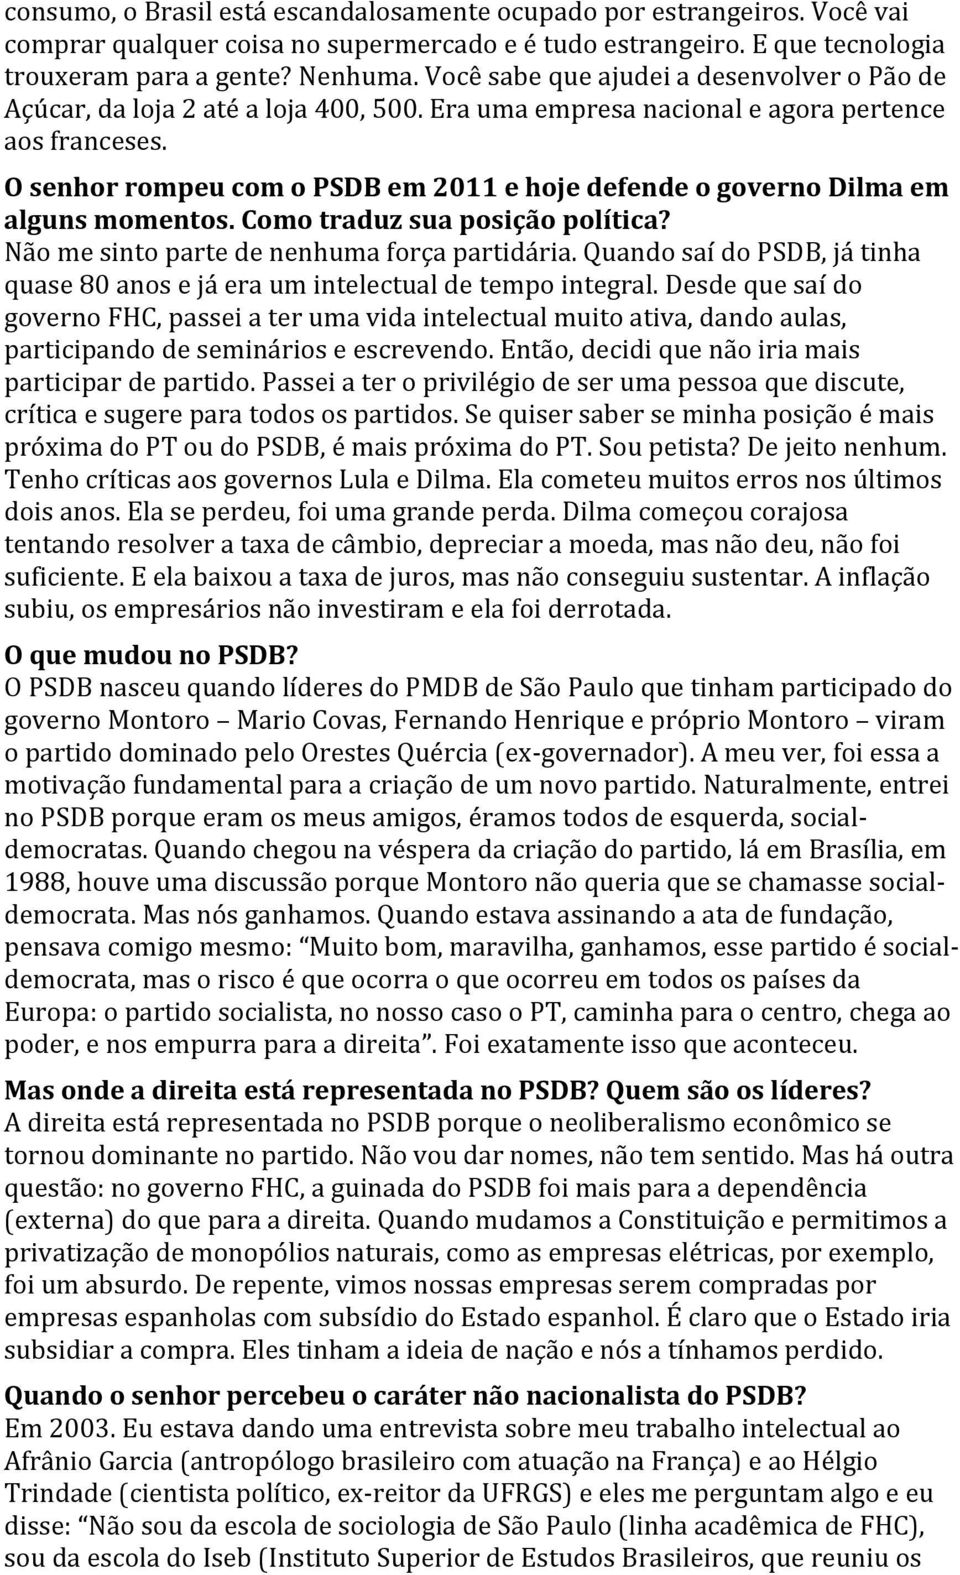 O senhor rompeu com o PSDB em 2011 e hoje defende o governo Dilma em alguns momentos. Como traduz sua posição política? Não me sinto parte de nenhuma força partidária.